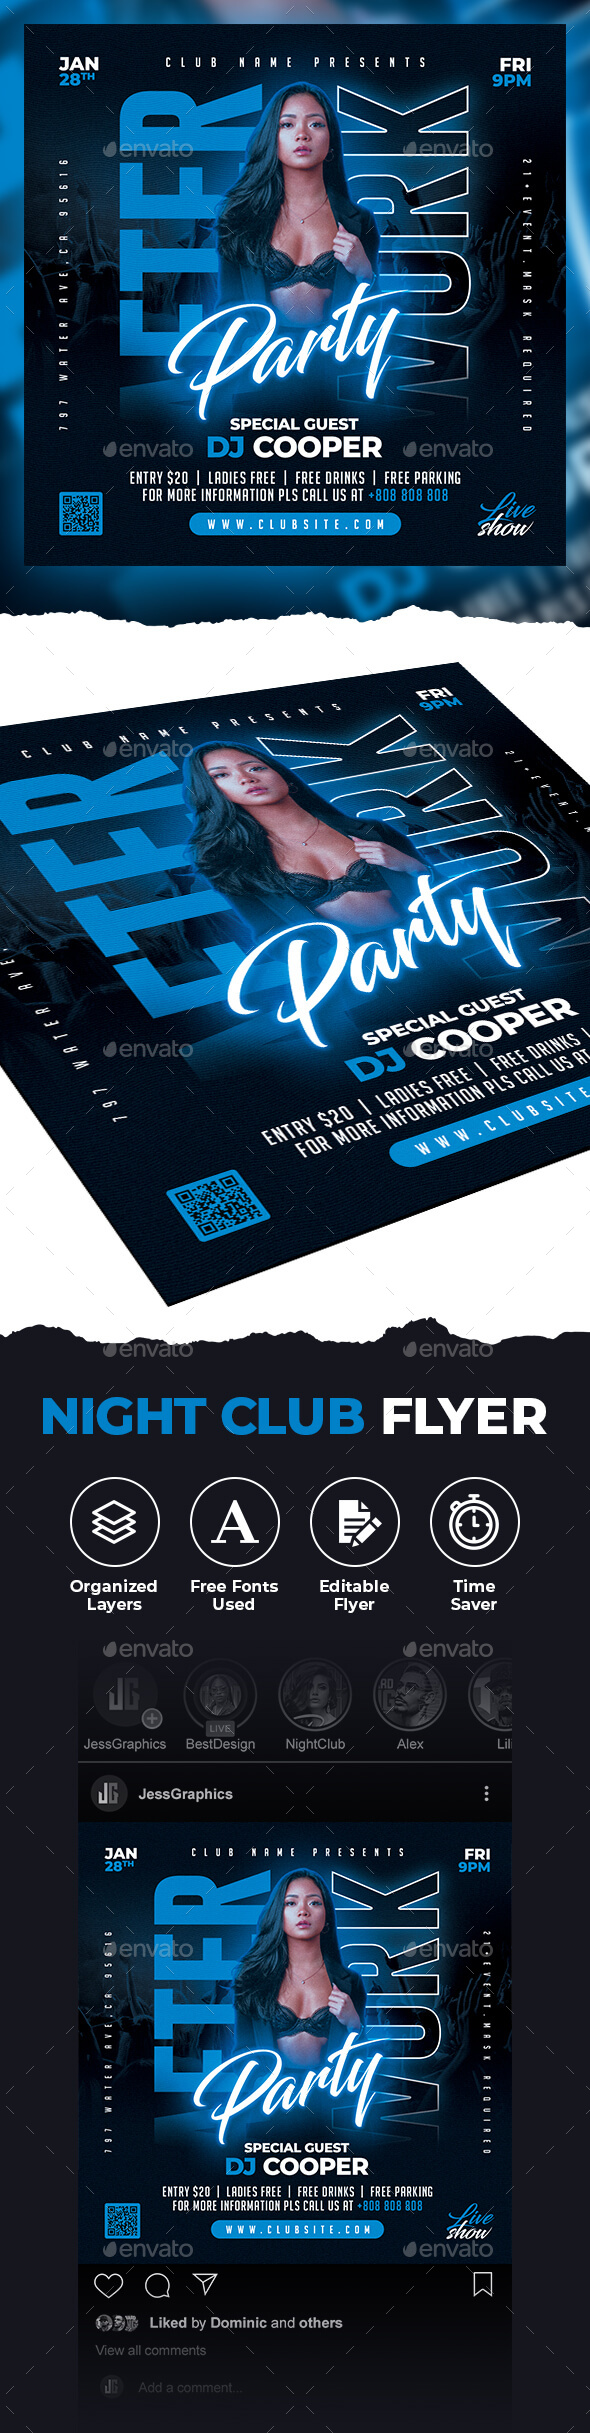 Night Club Flyer